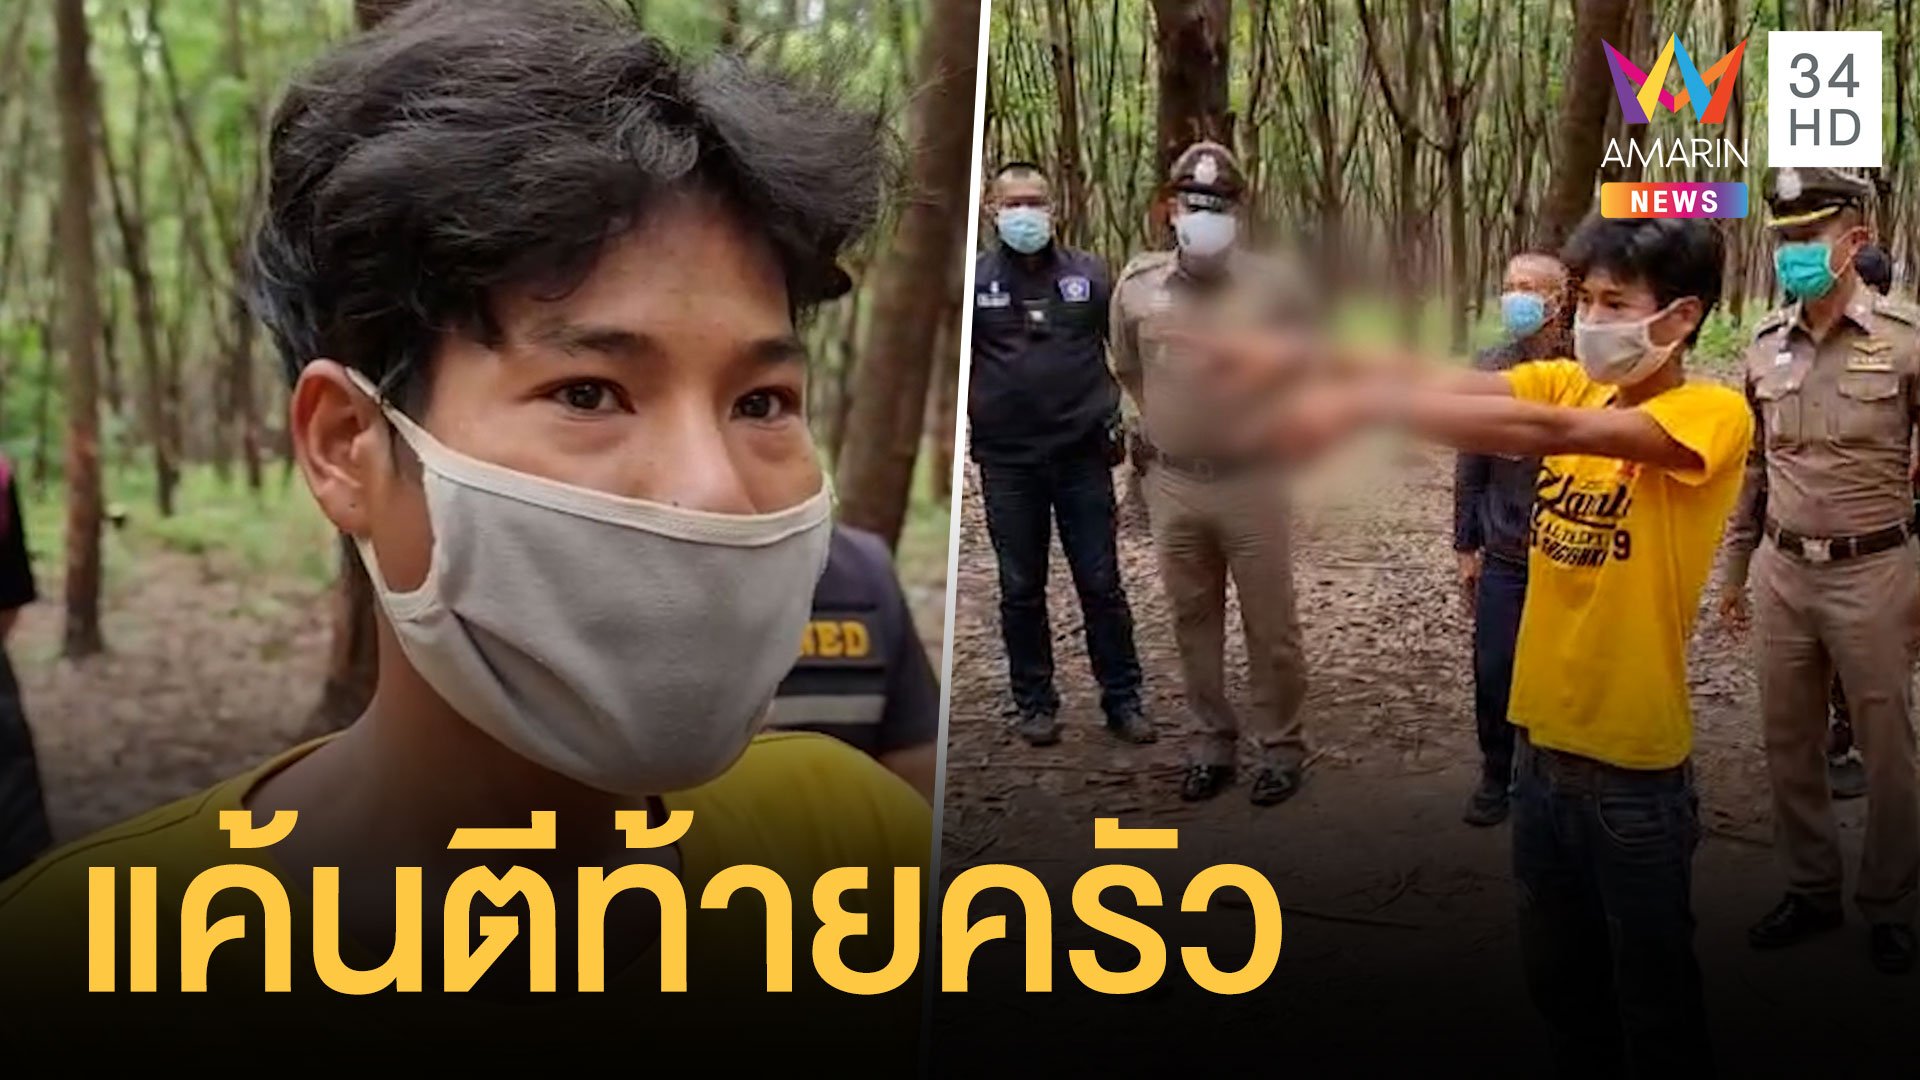 รวบหนุ่มพม่าโหดใช้ขวานจามหัวเพื่อน ปมแค้นถูกตีท้ายครัว | ข่าวเที่ยงอมรินทร์ | 9 พ.ค. 64 | AMARIN TVHD34